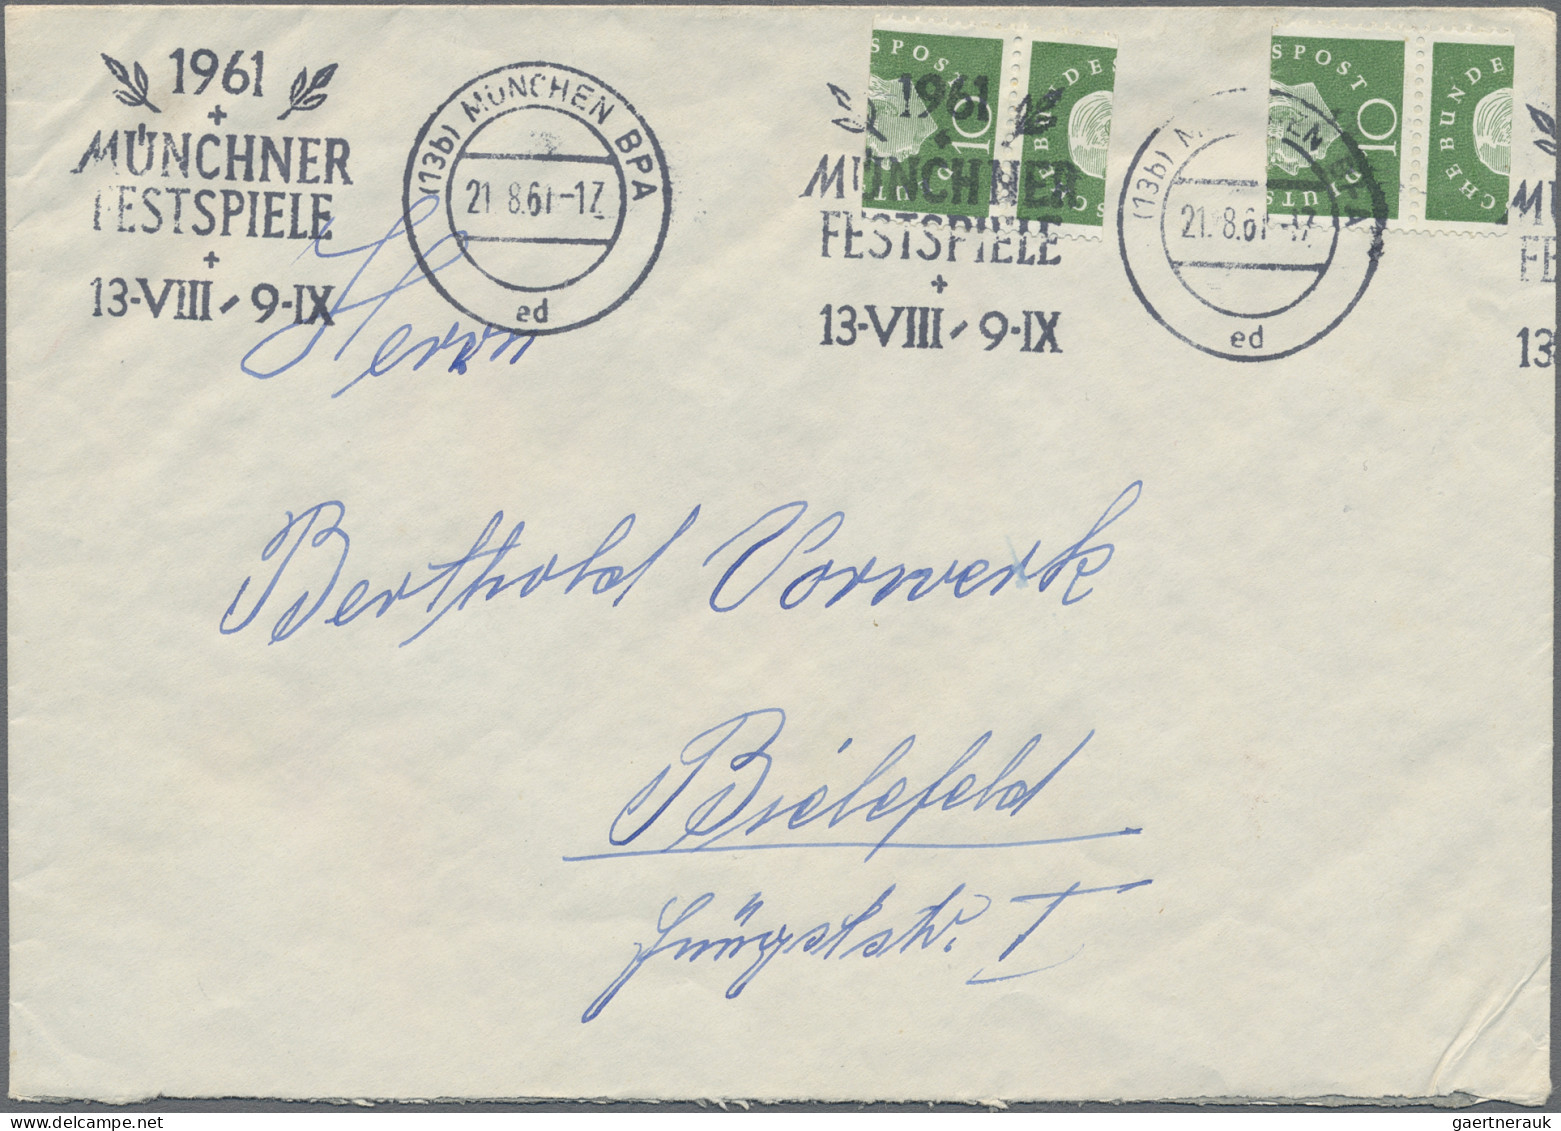 Bundesrepublik Deutschland: 1959, Heuss III, 10 (Pf), 2 Marken, Extrem Verschnit - Lettres & Documents